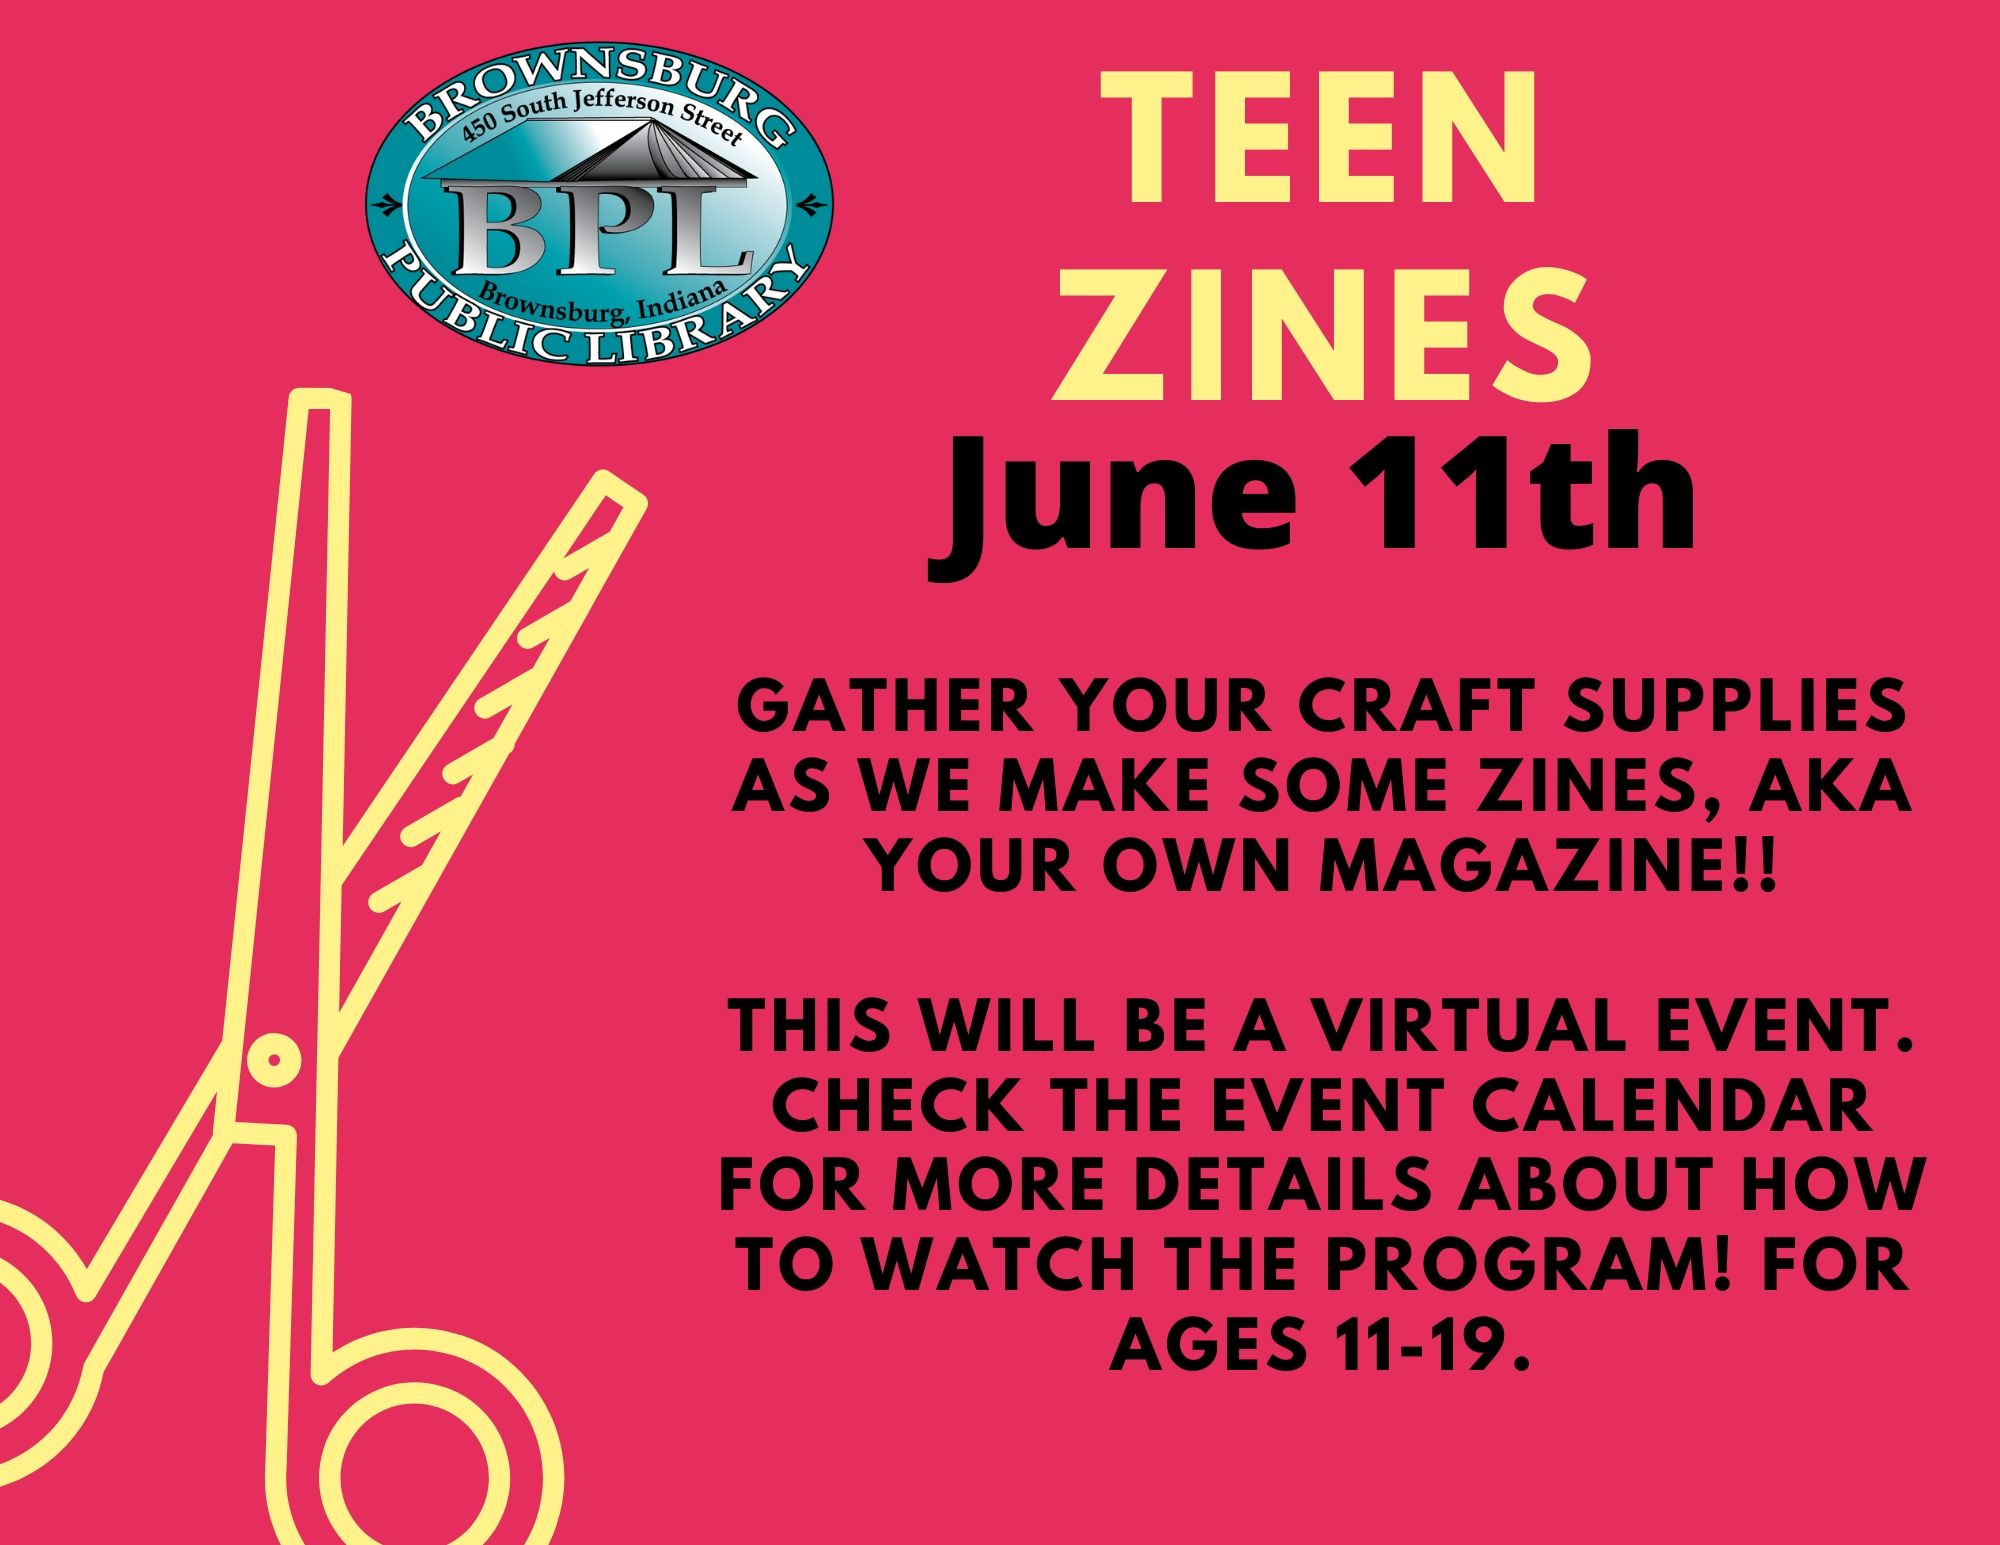 Teen Zines June 11th